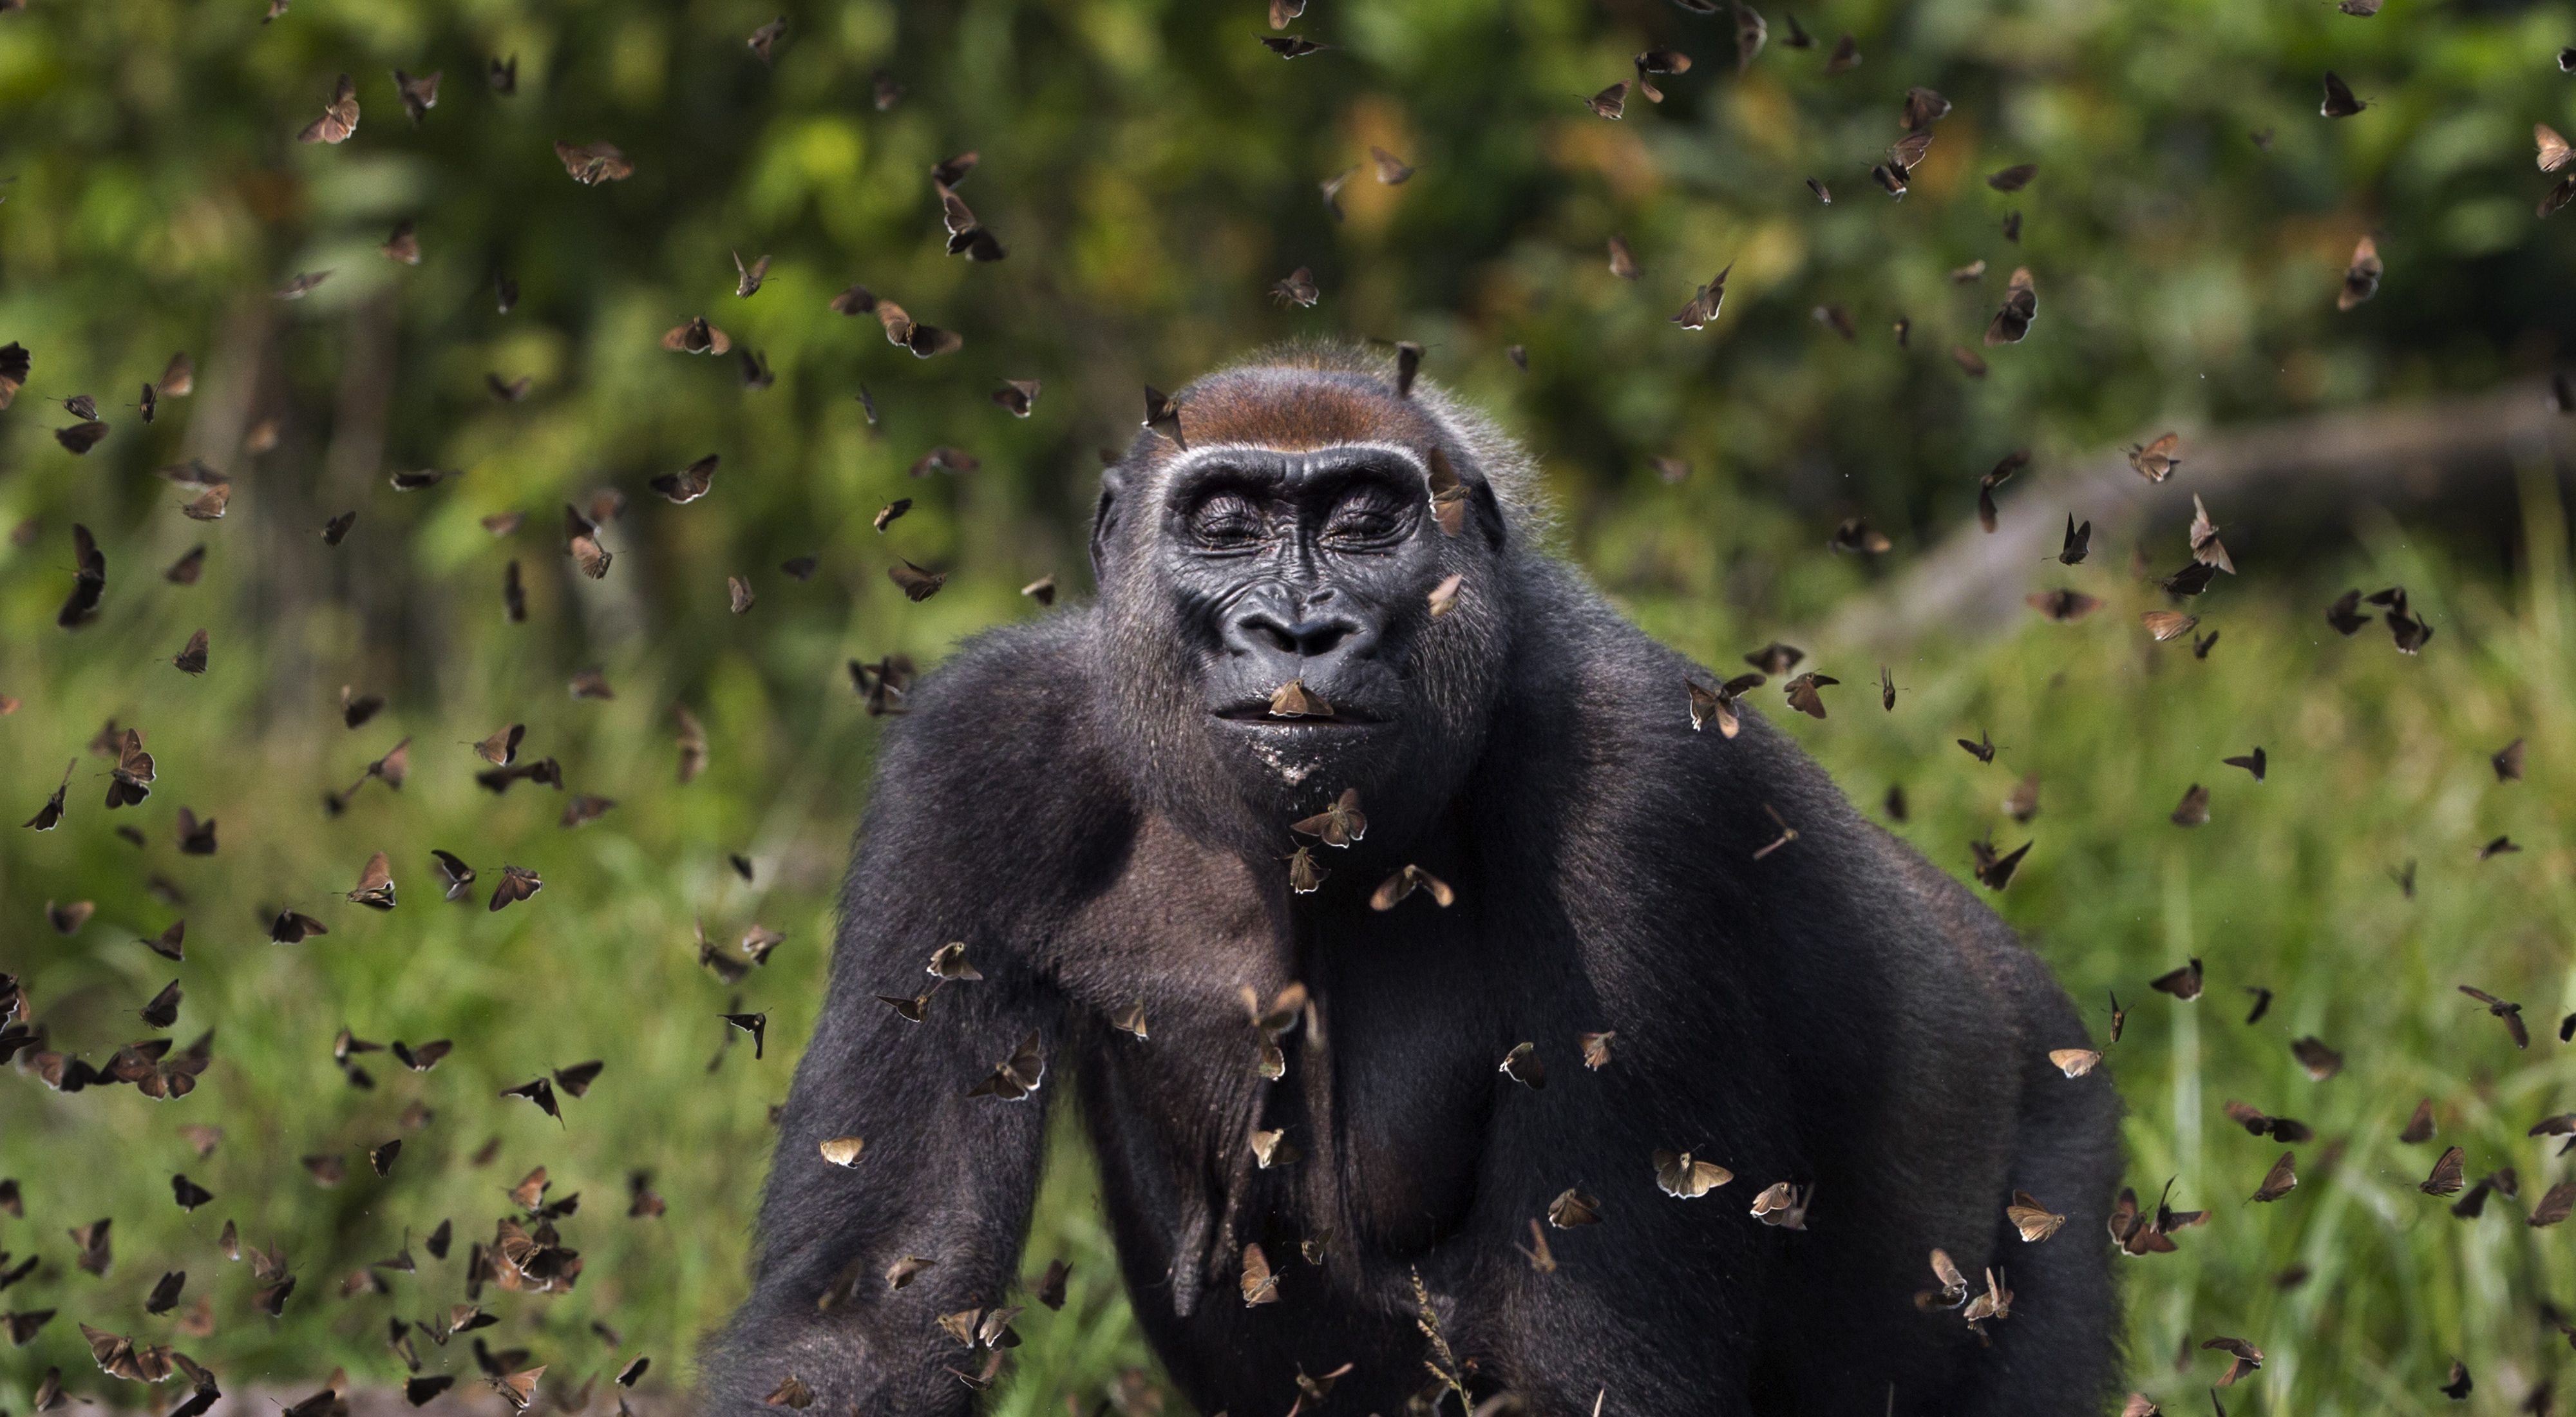 Una gorila occidental de llanura caminando entre una nube de mariposas que ha perturbado.